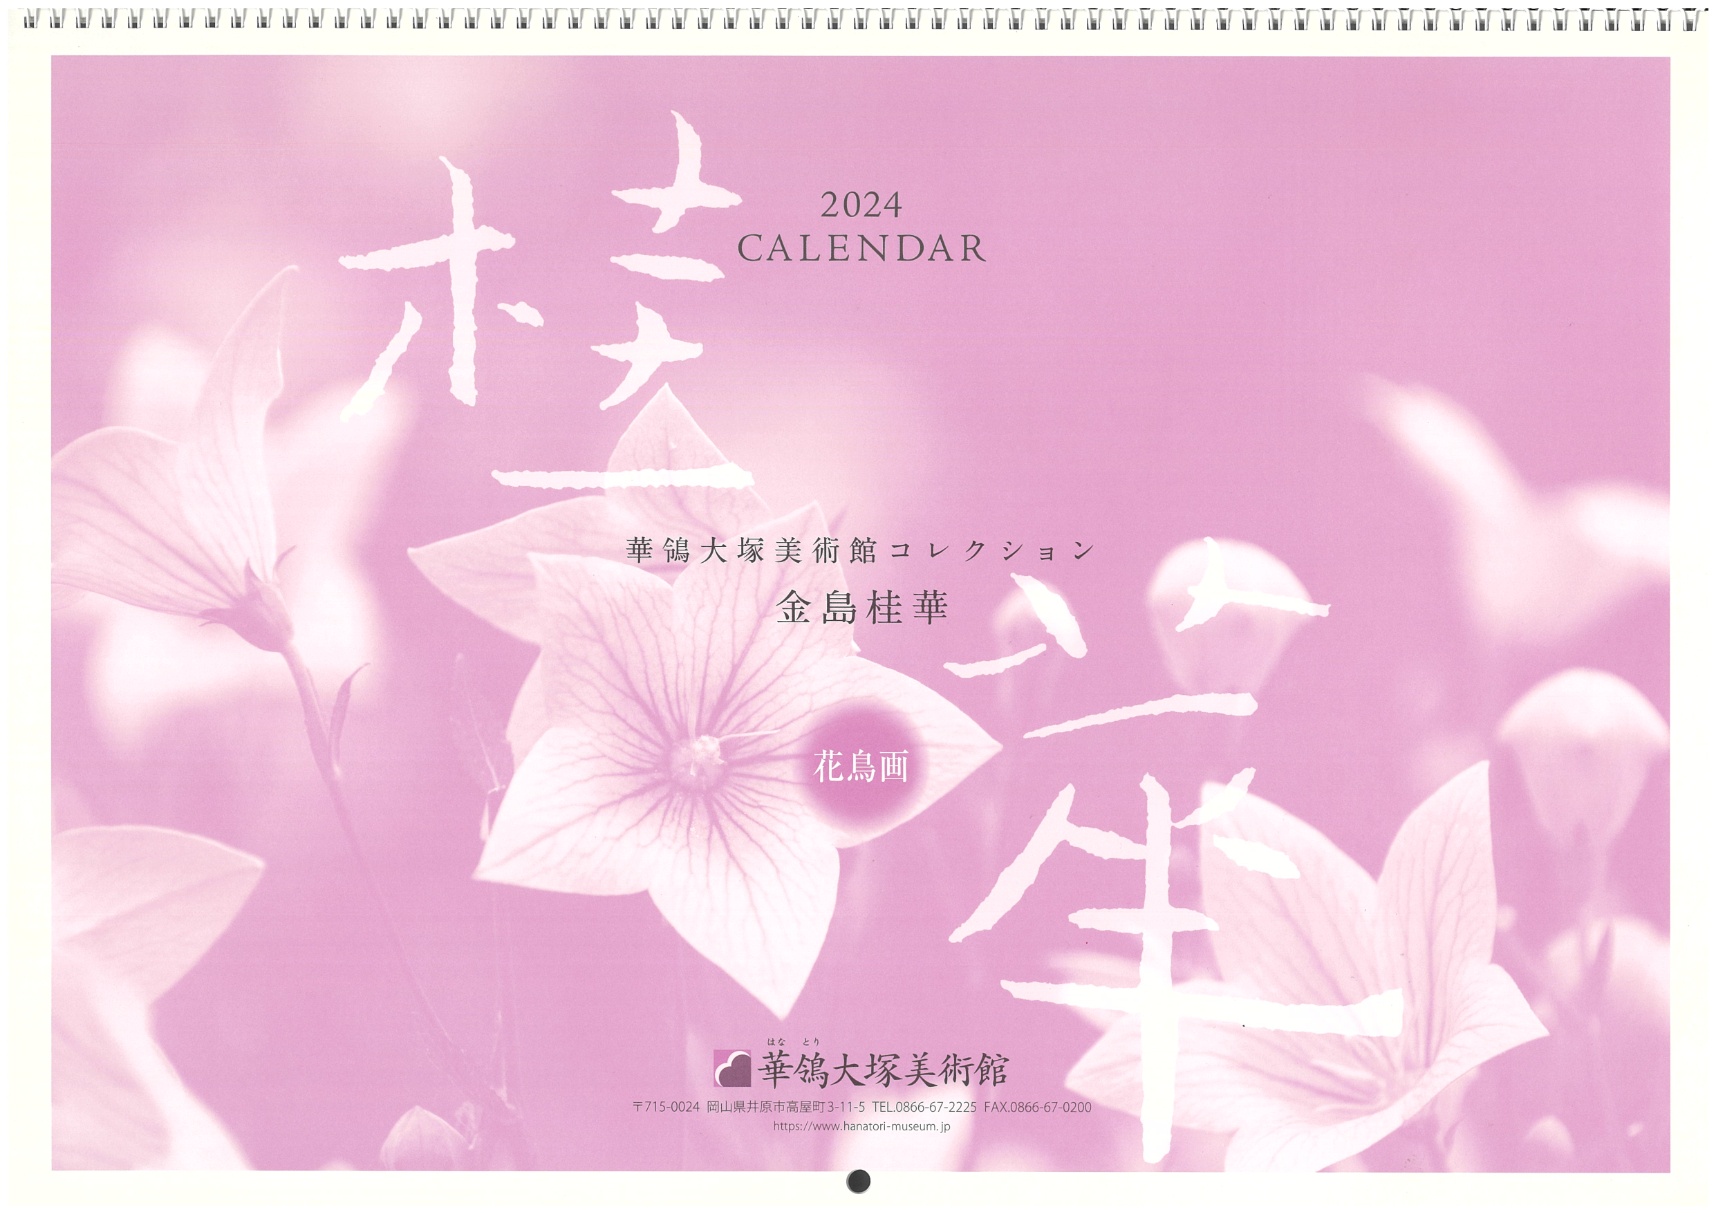 金島桂華・花鳥画カレンダー2024」完売のお知らせ | その他 | 公益財団法人タカヤ文化財団